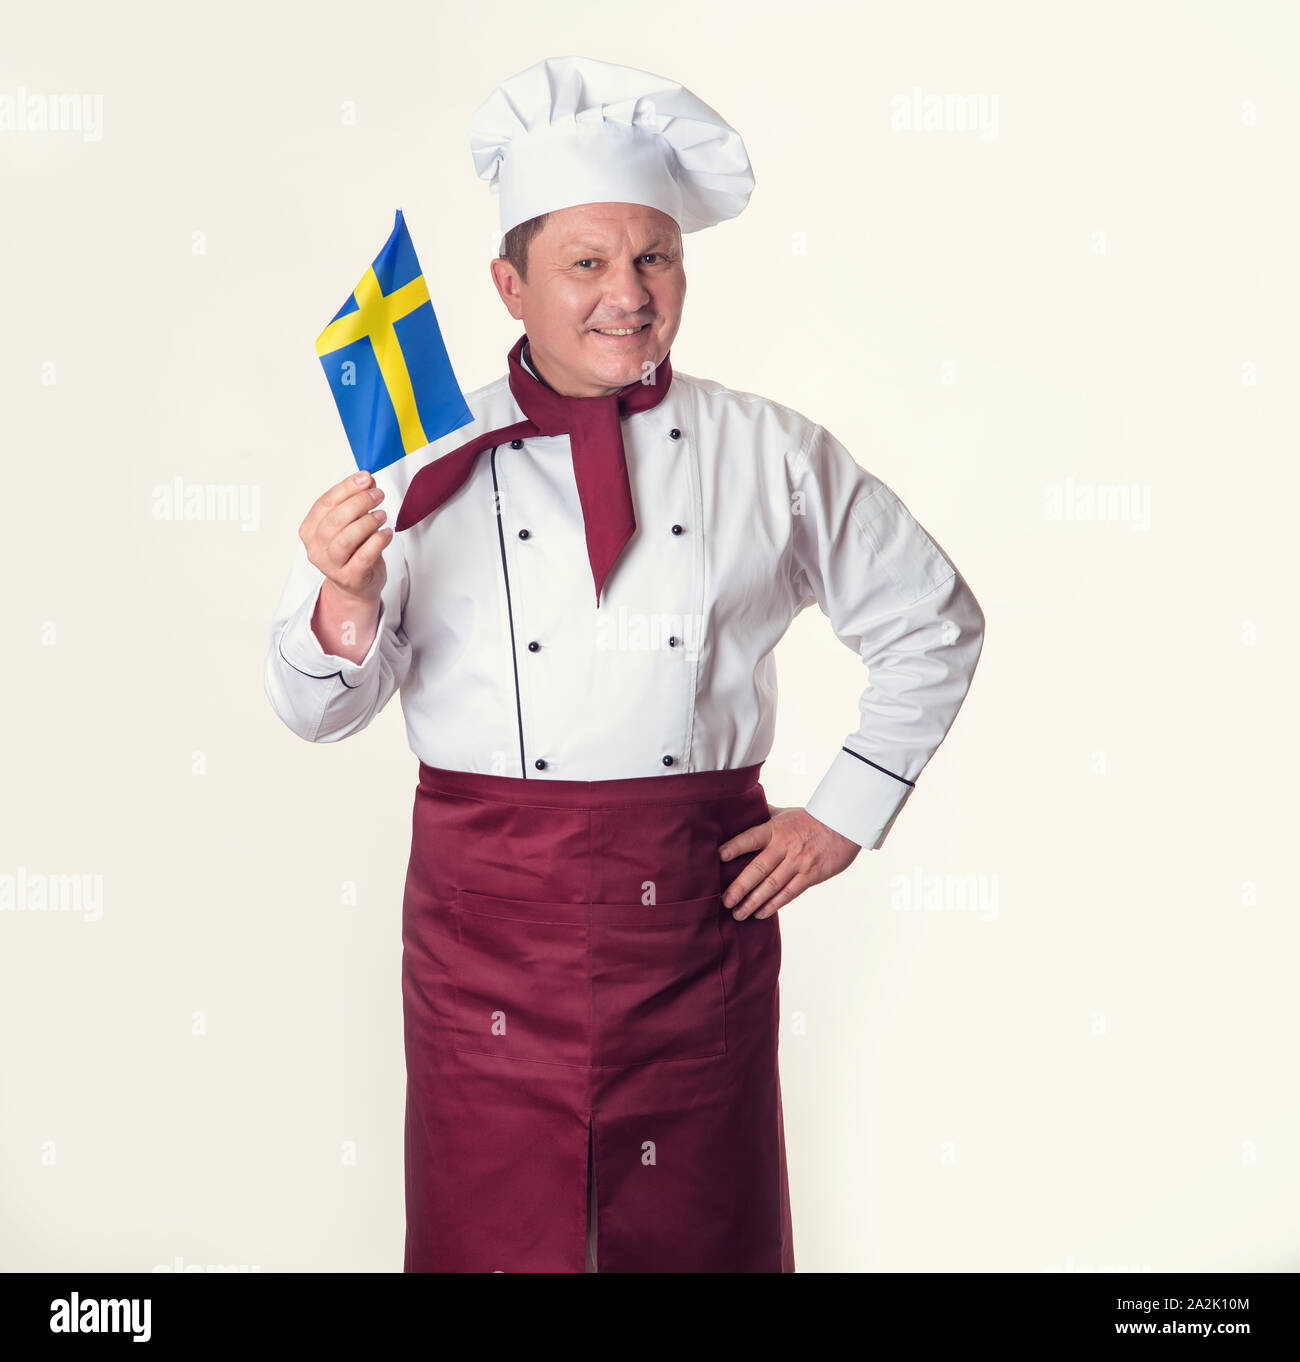 Chef cuisinier en uniforme avec le drapeau de la Suède. La cuisine scandinave. Banque D'Images